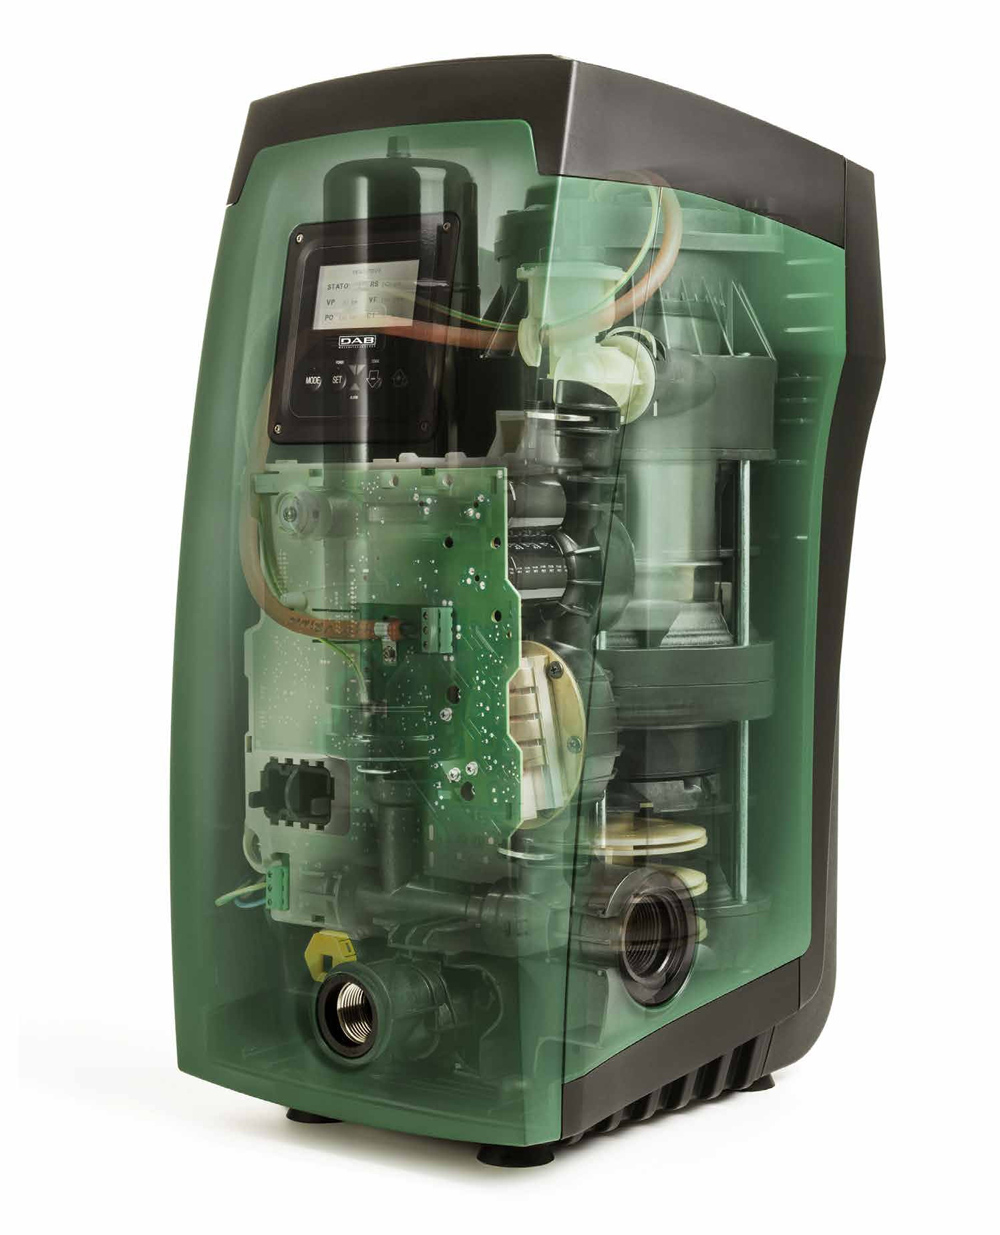 意大利DAB NOVA UP 300 MA小型潜水泵(带浮球) - 家用潜水增压泵别墅污水提升器永磁变频增压水泵